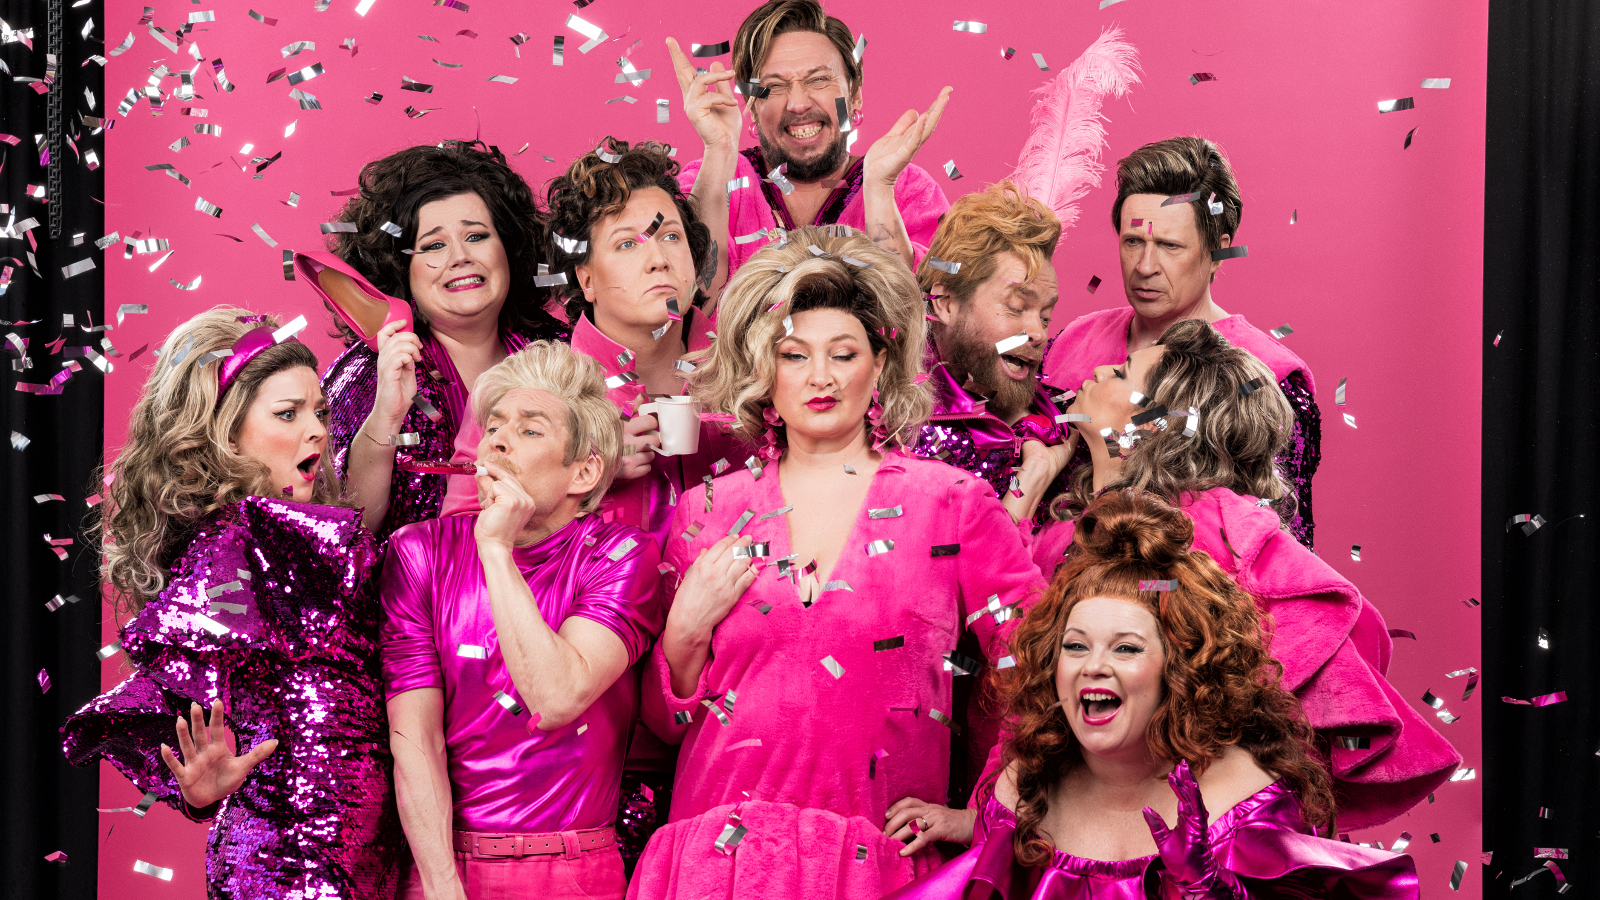 Kuvassa ovat näyttelijät tiiviisti keskellä olevan vaaleatukkaisen naisnäyttelijän ympärillä. Hänella on pinkki puki ja tausta on pinkki.